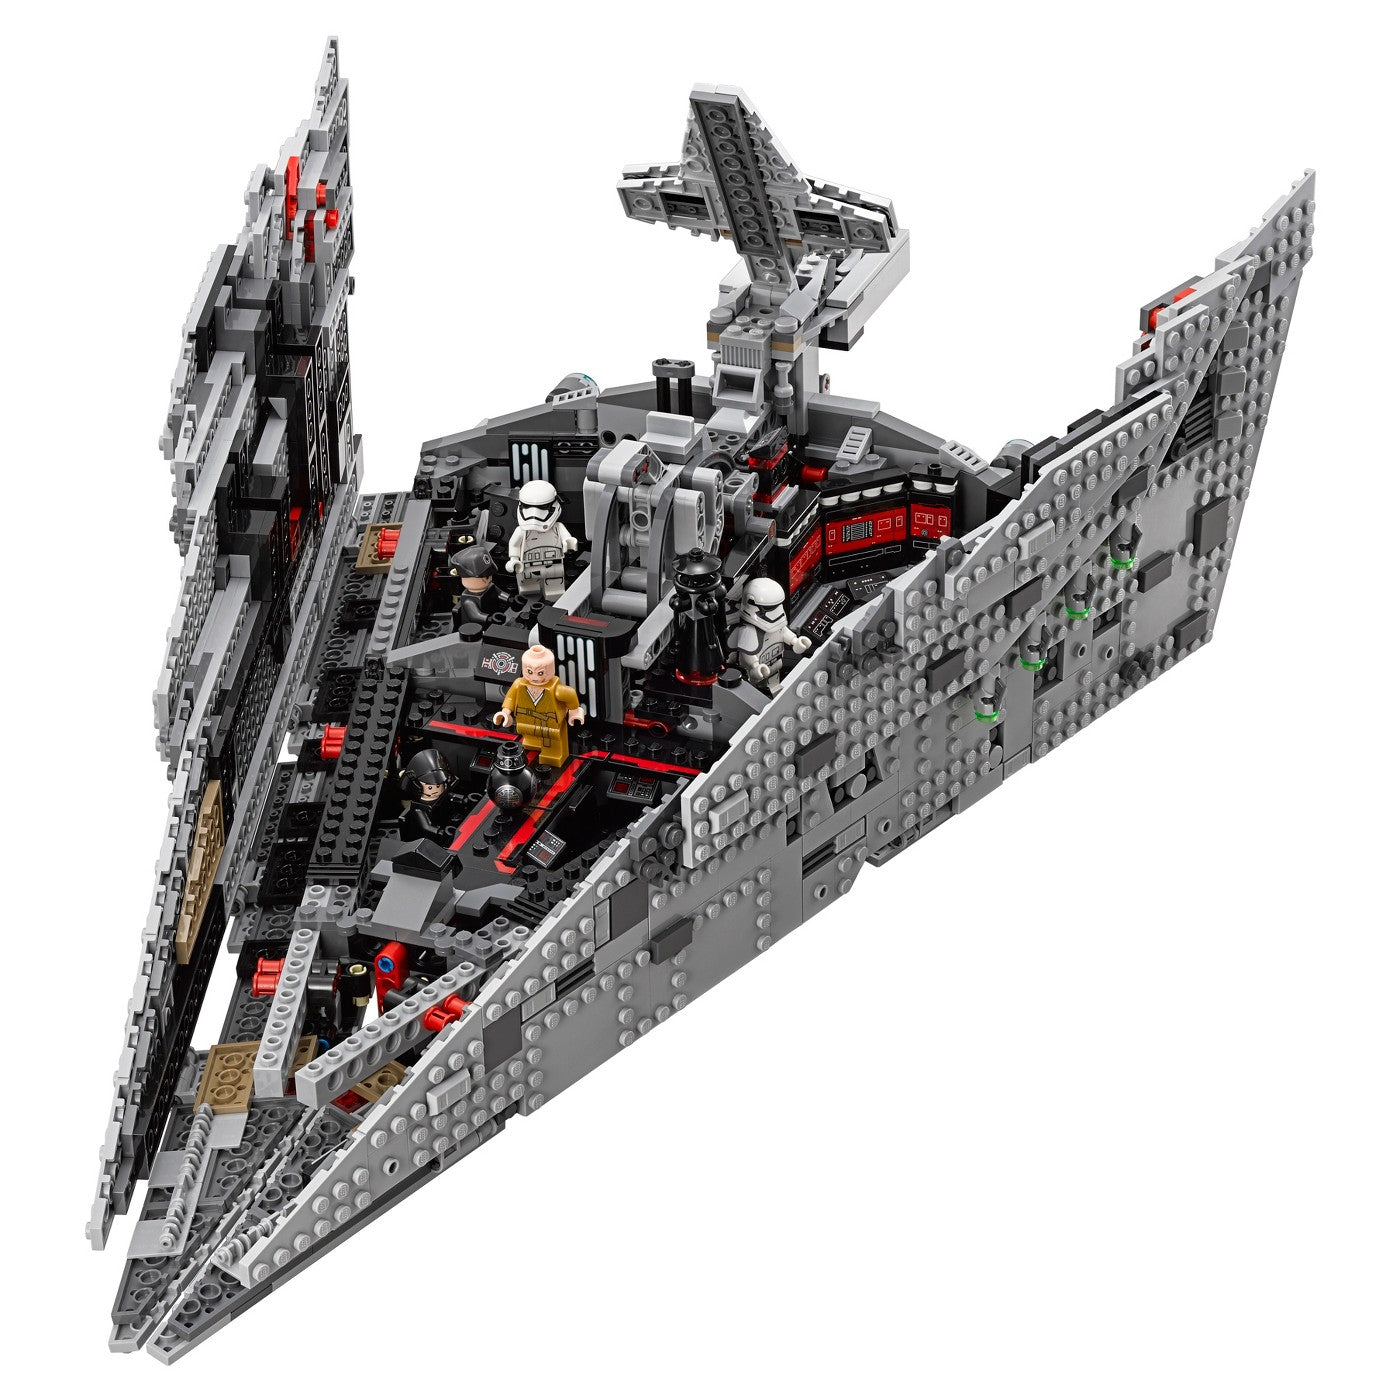 LEGO Star Wars: First Order Star Destroyer Building Set - 75190